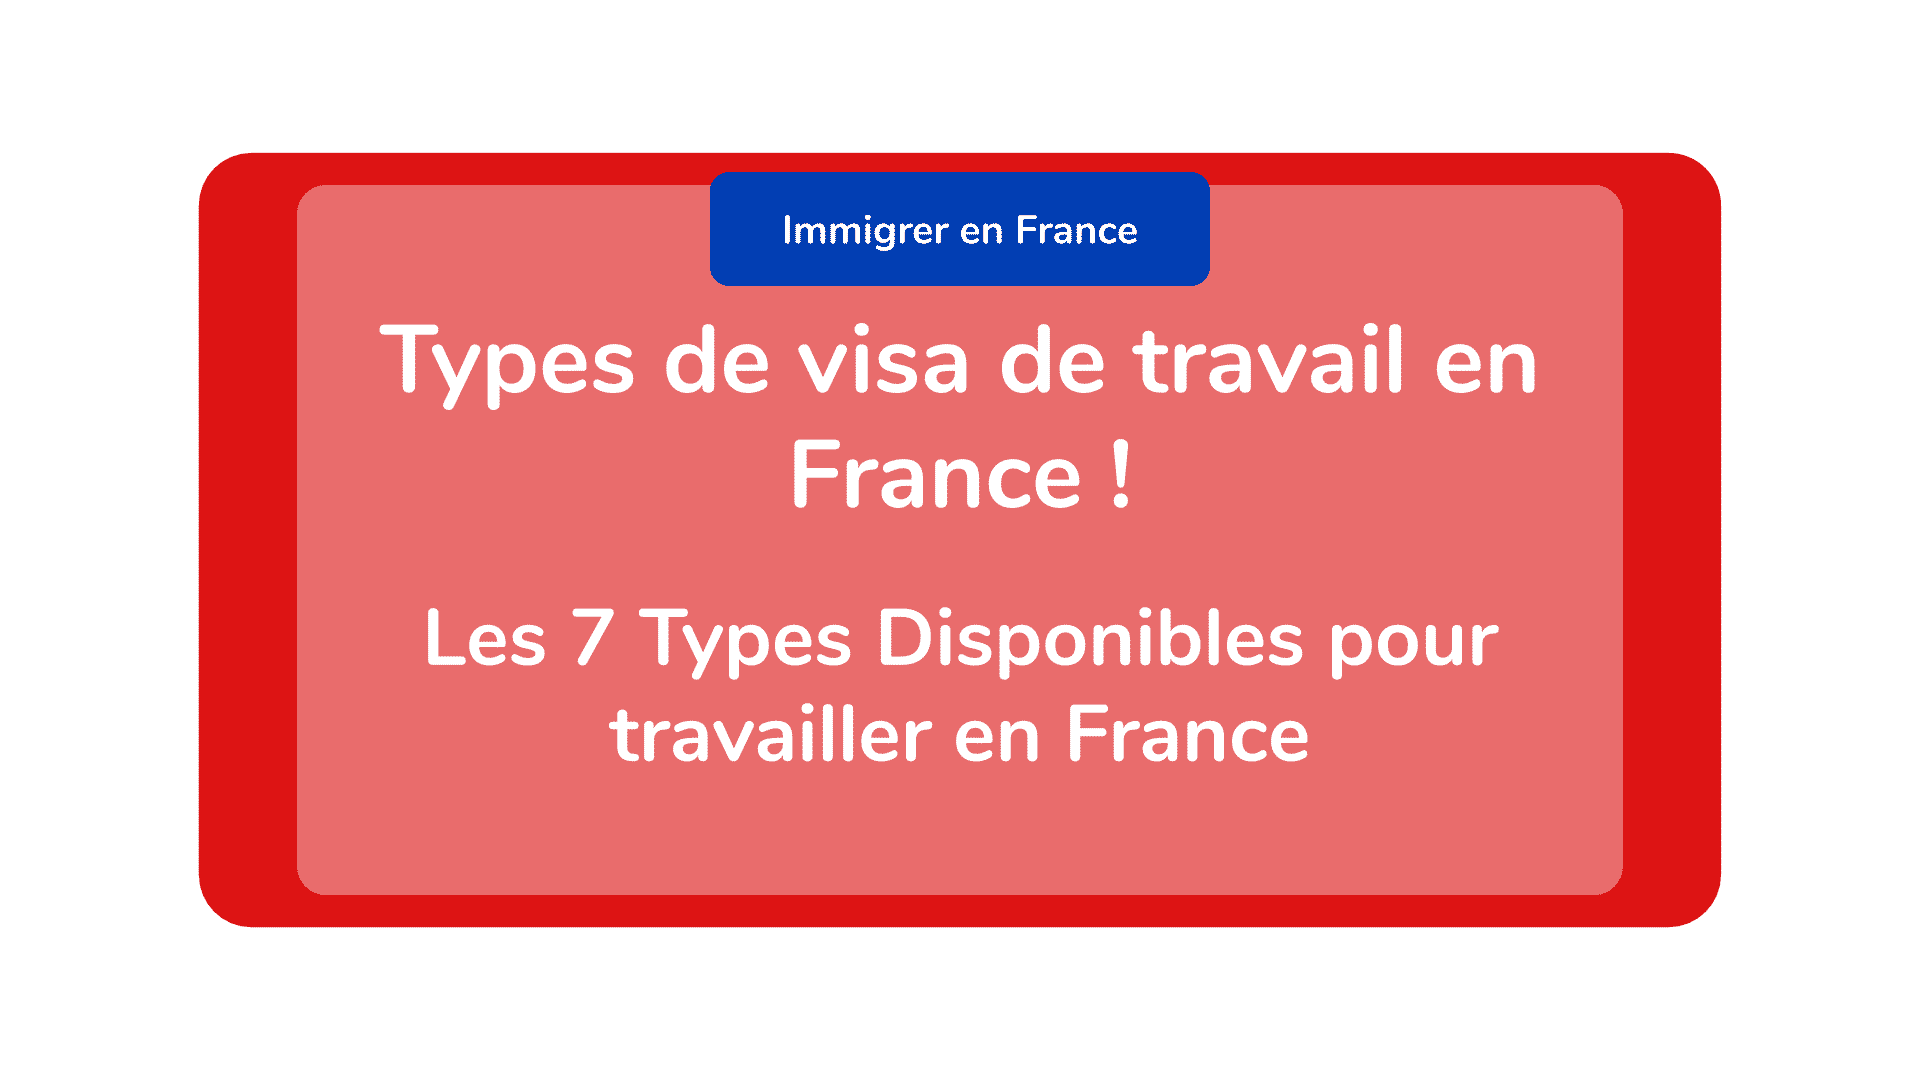 Types de visa de travail en France ! Les 7 Types Disponibles pour travailler en France